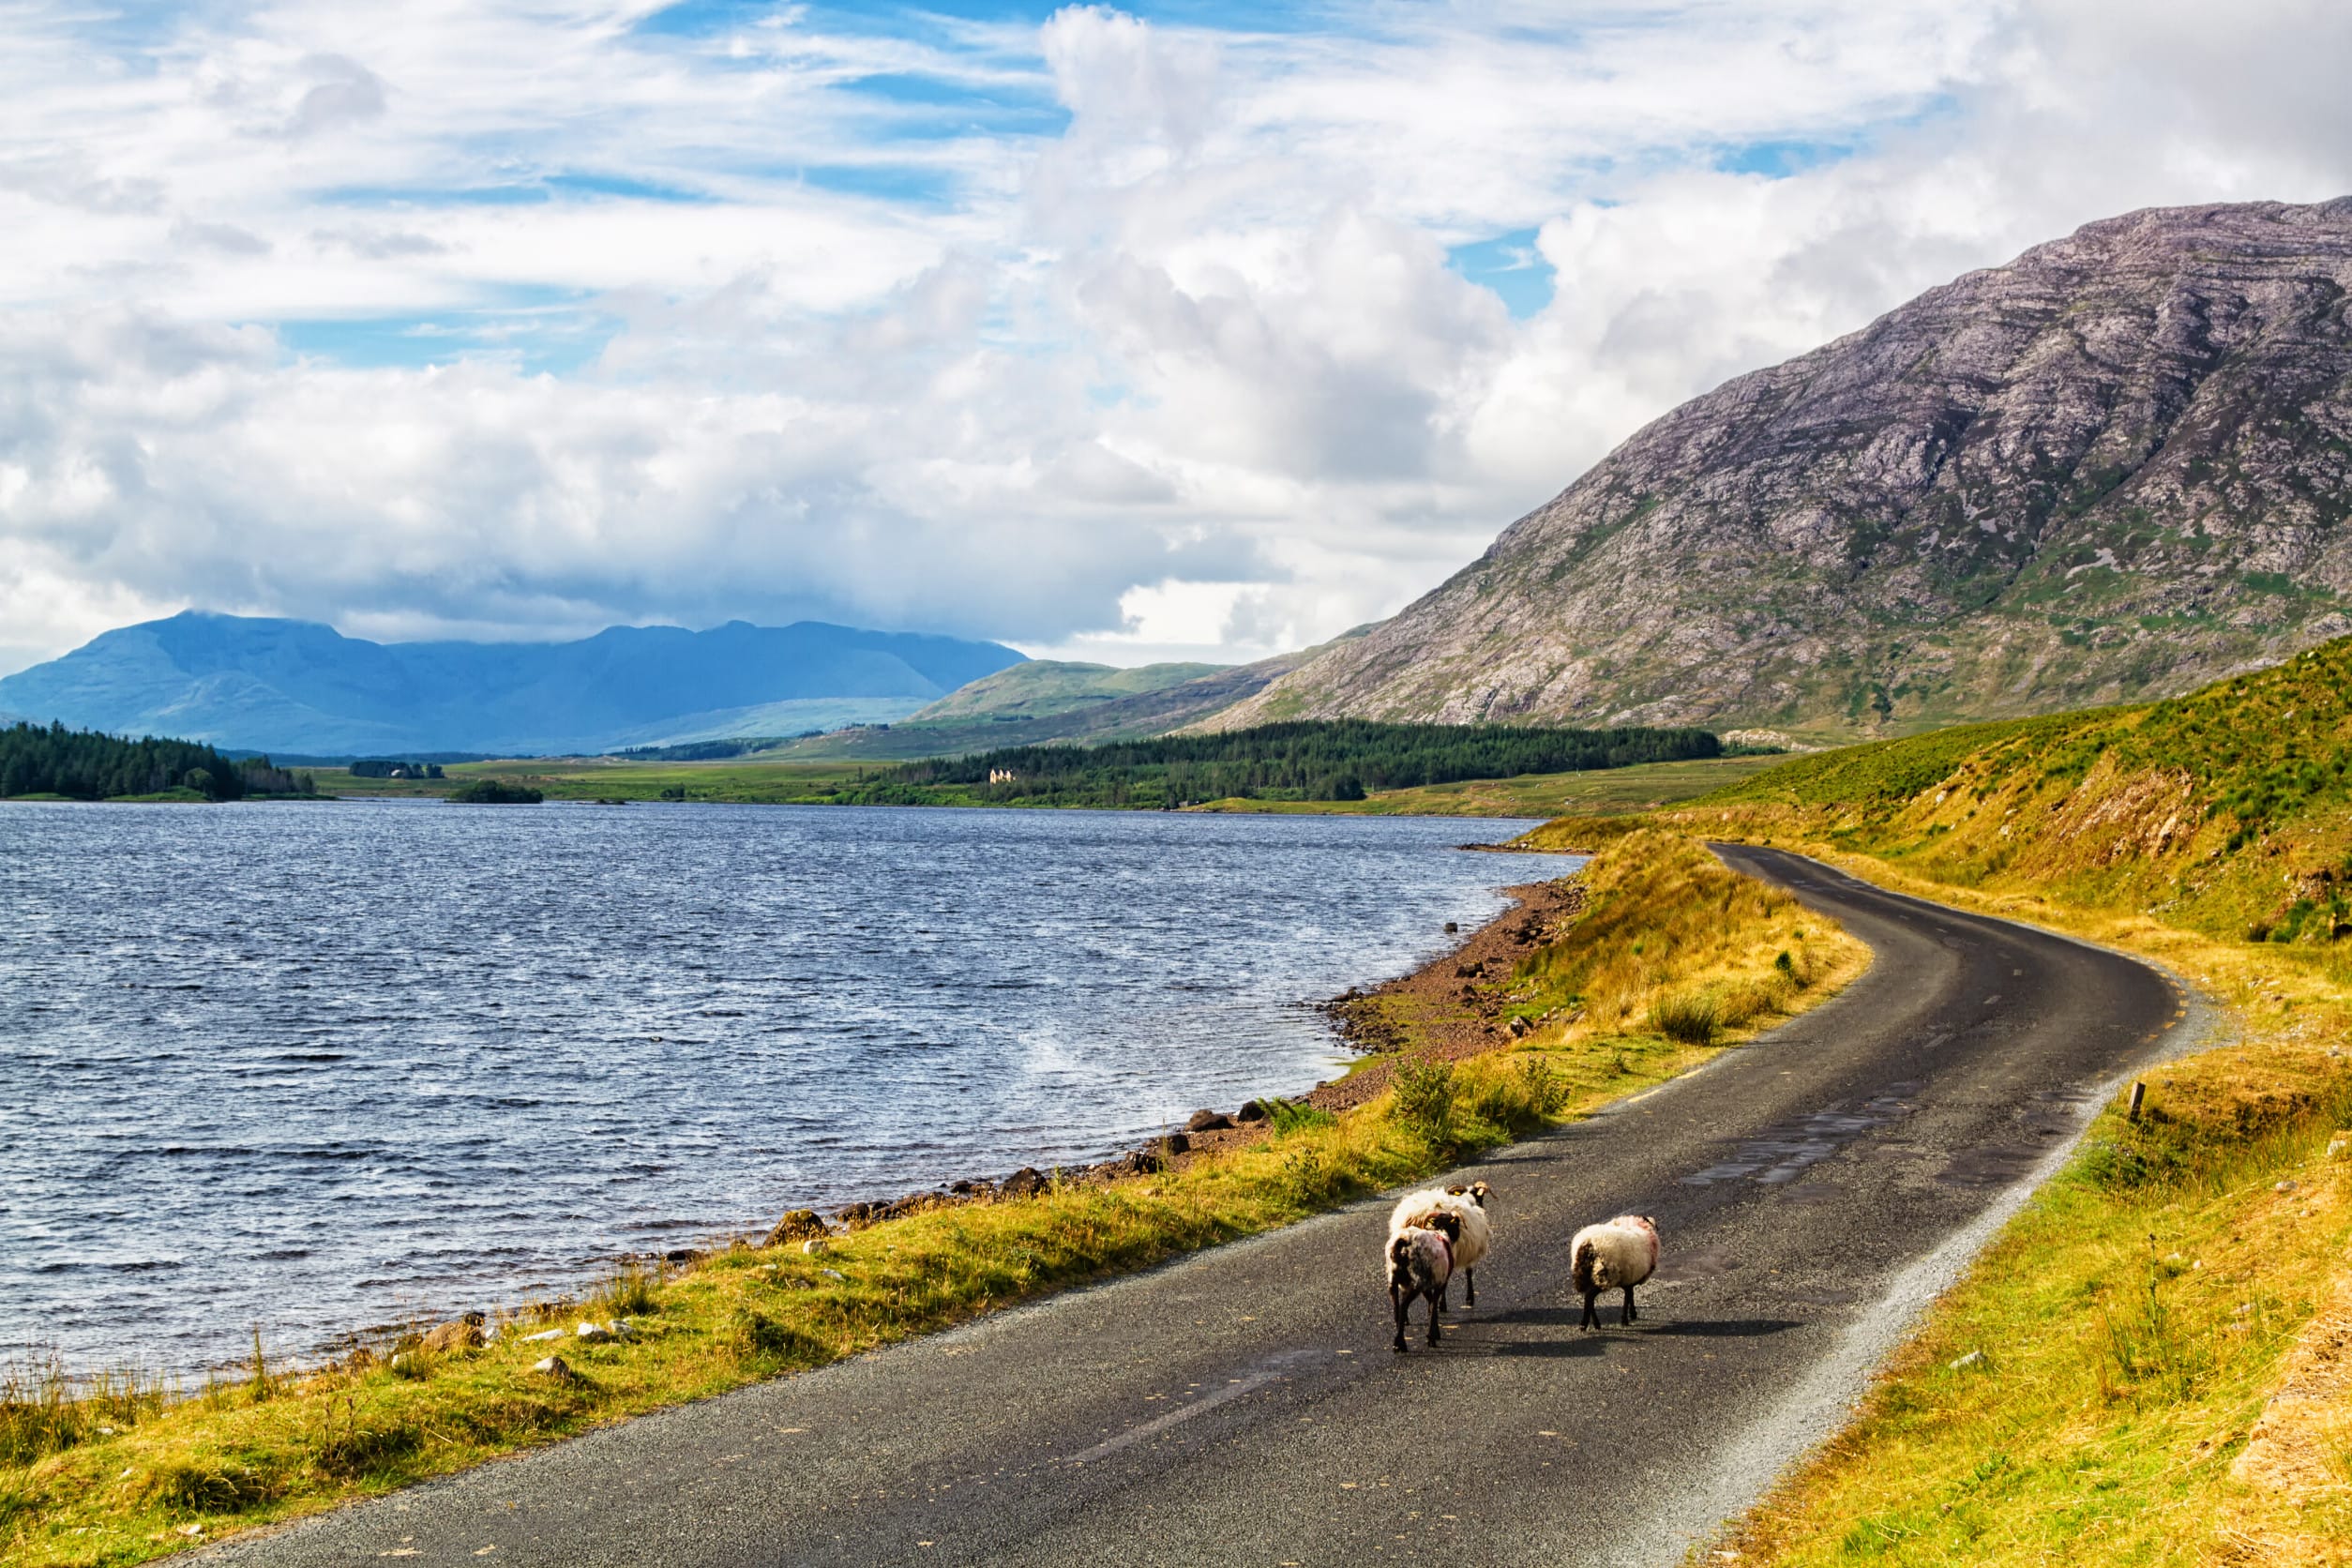 Sheep on road at Lough Inagh, Connemara